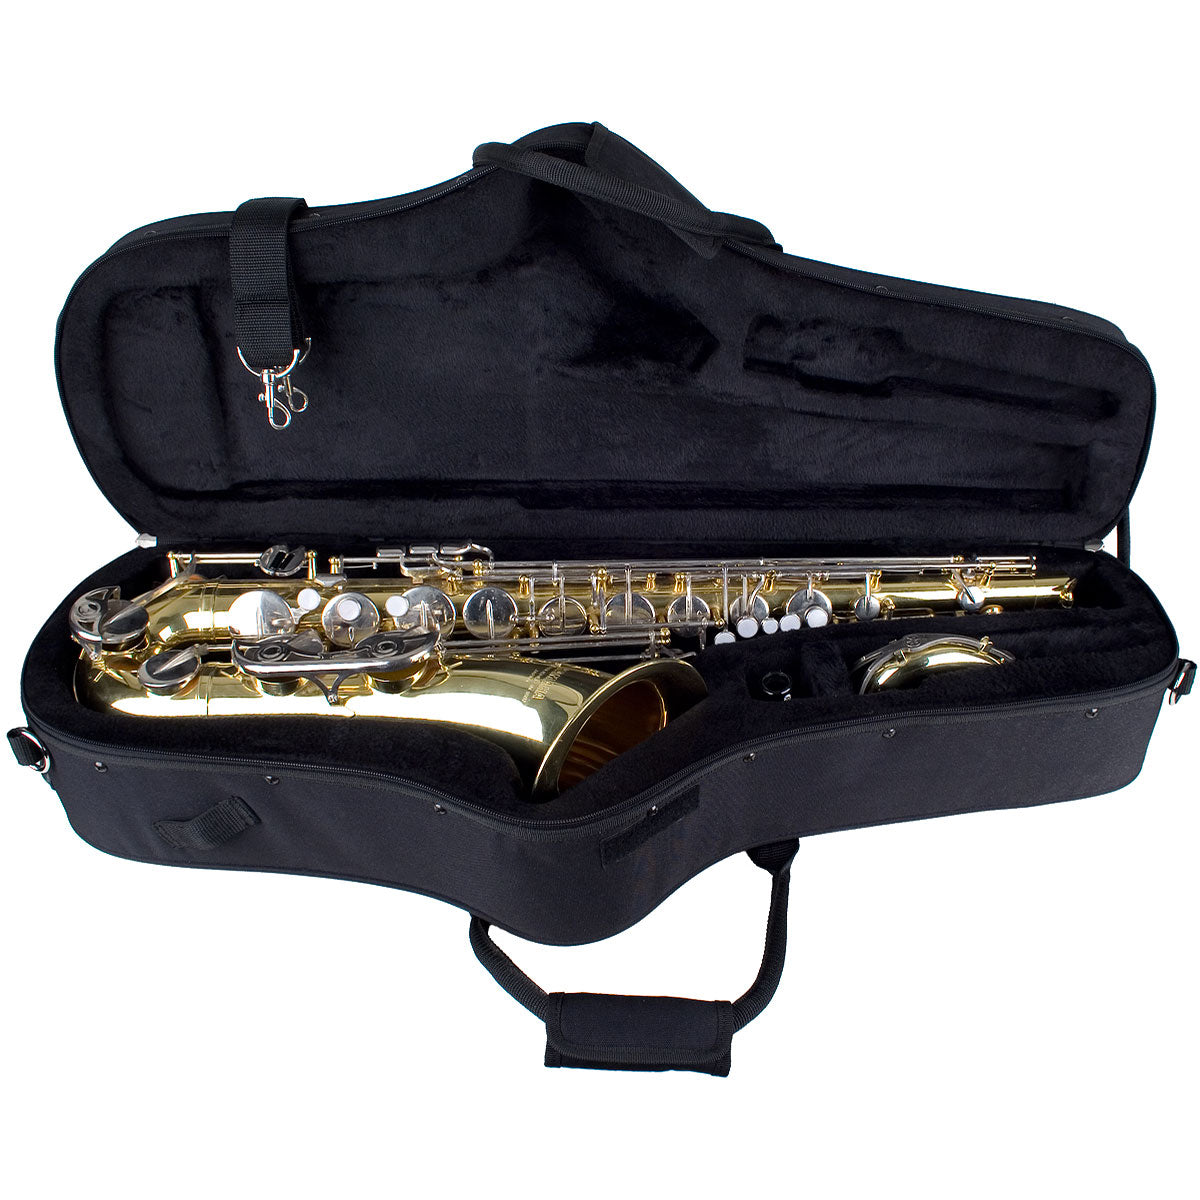 Protec MX305CT Max Contoured Tenor Saxophone Case in Black